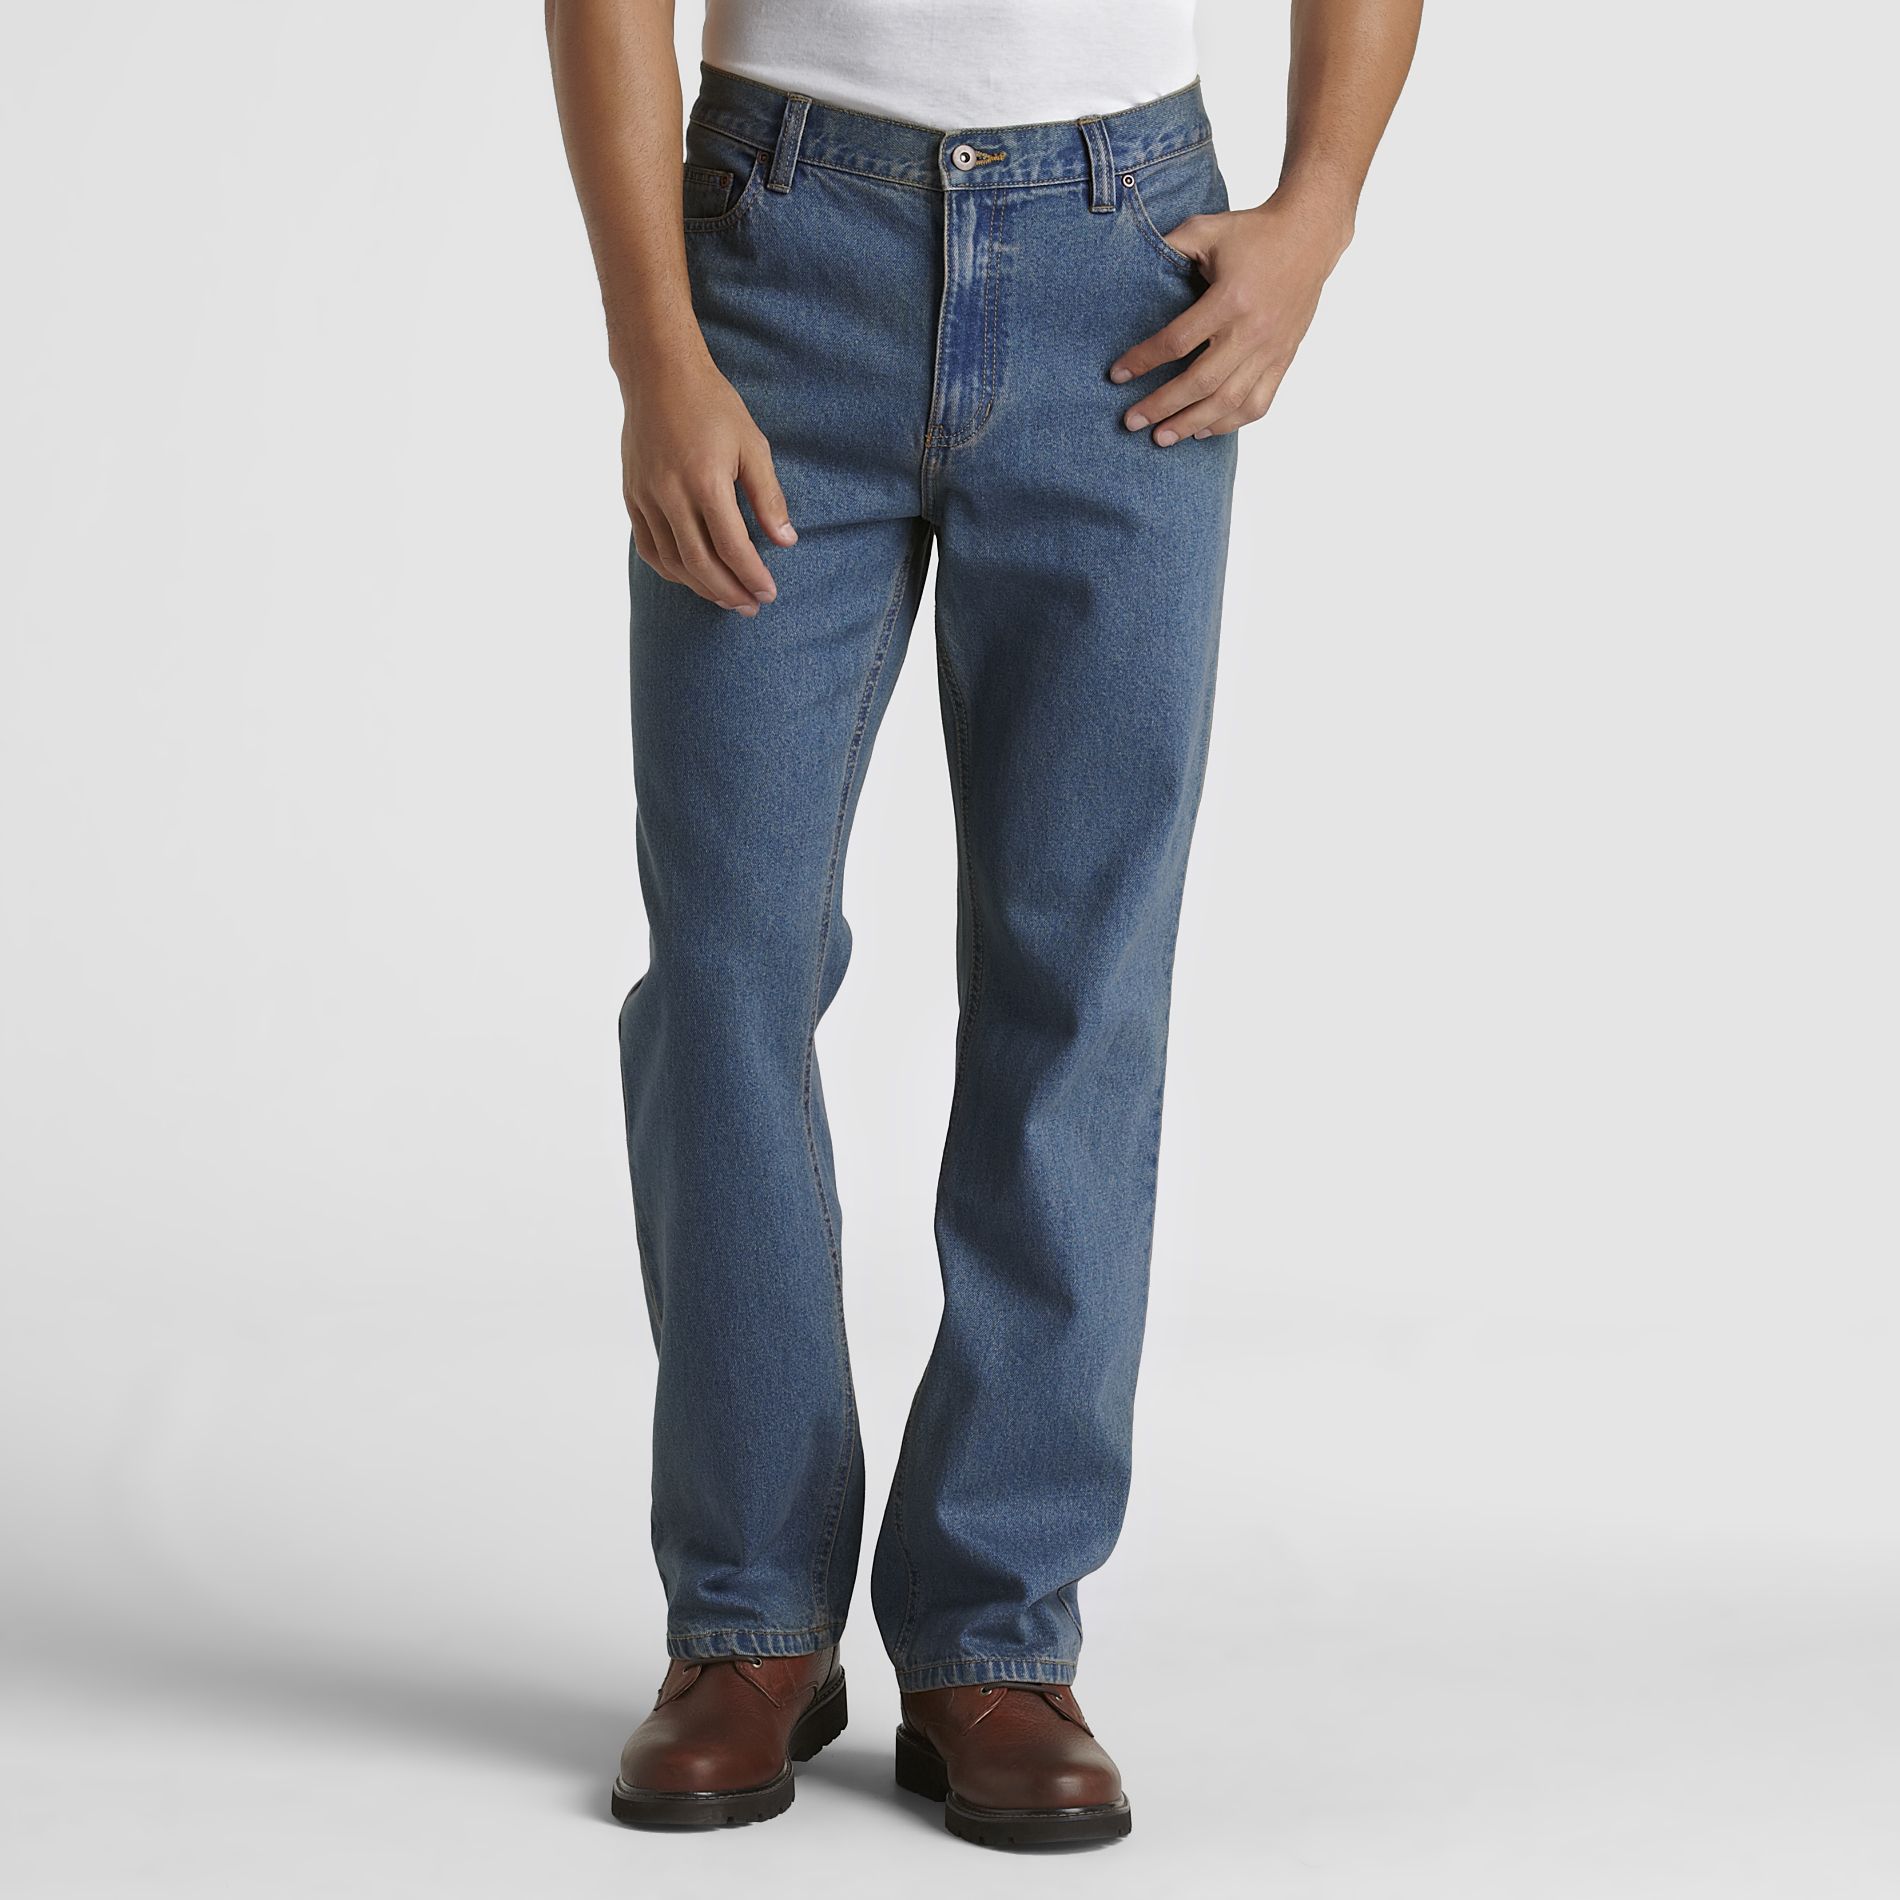 Outdoor Life Men's Regular Fit Jeans